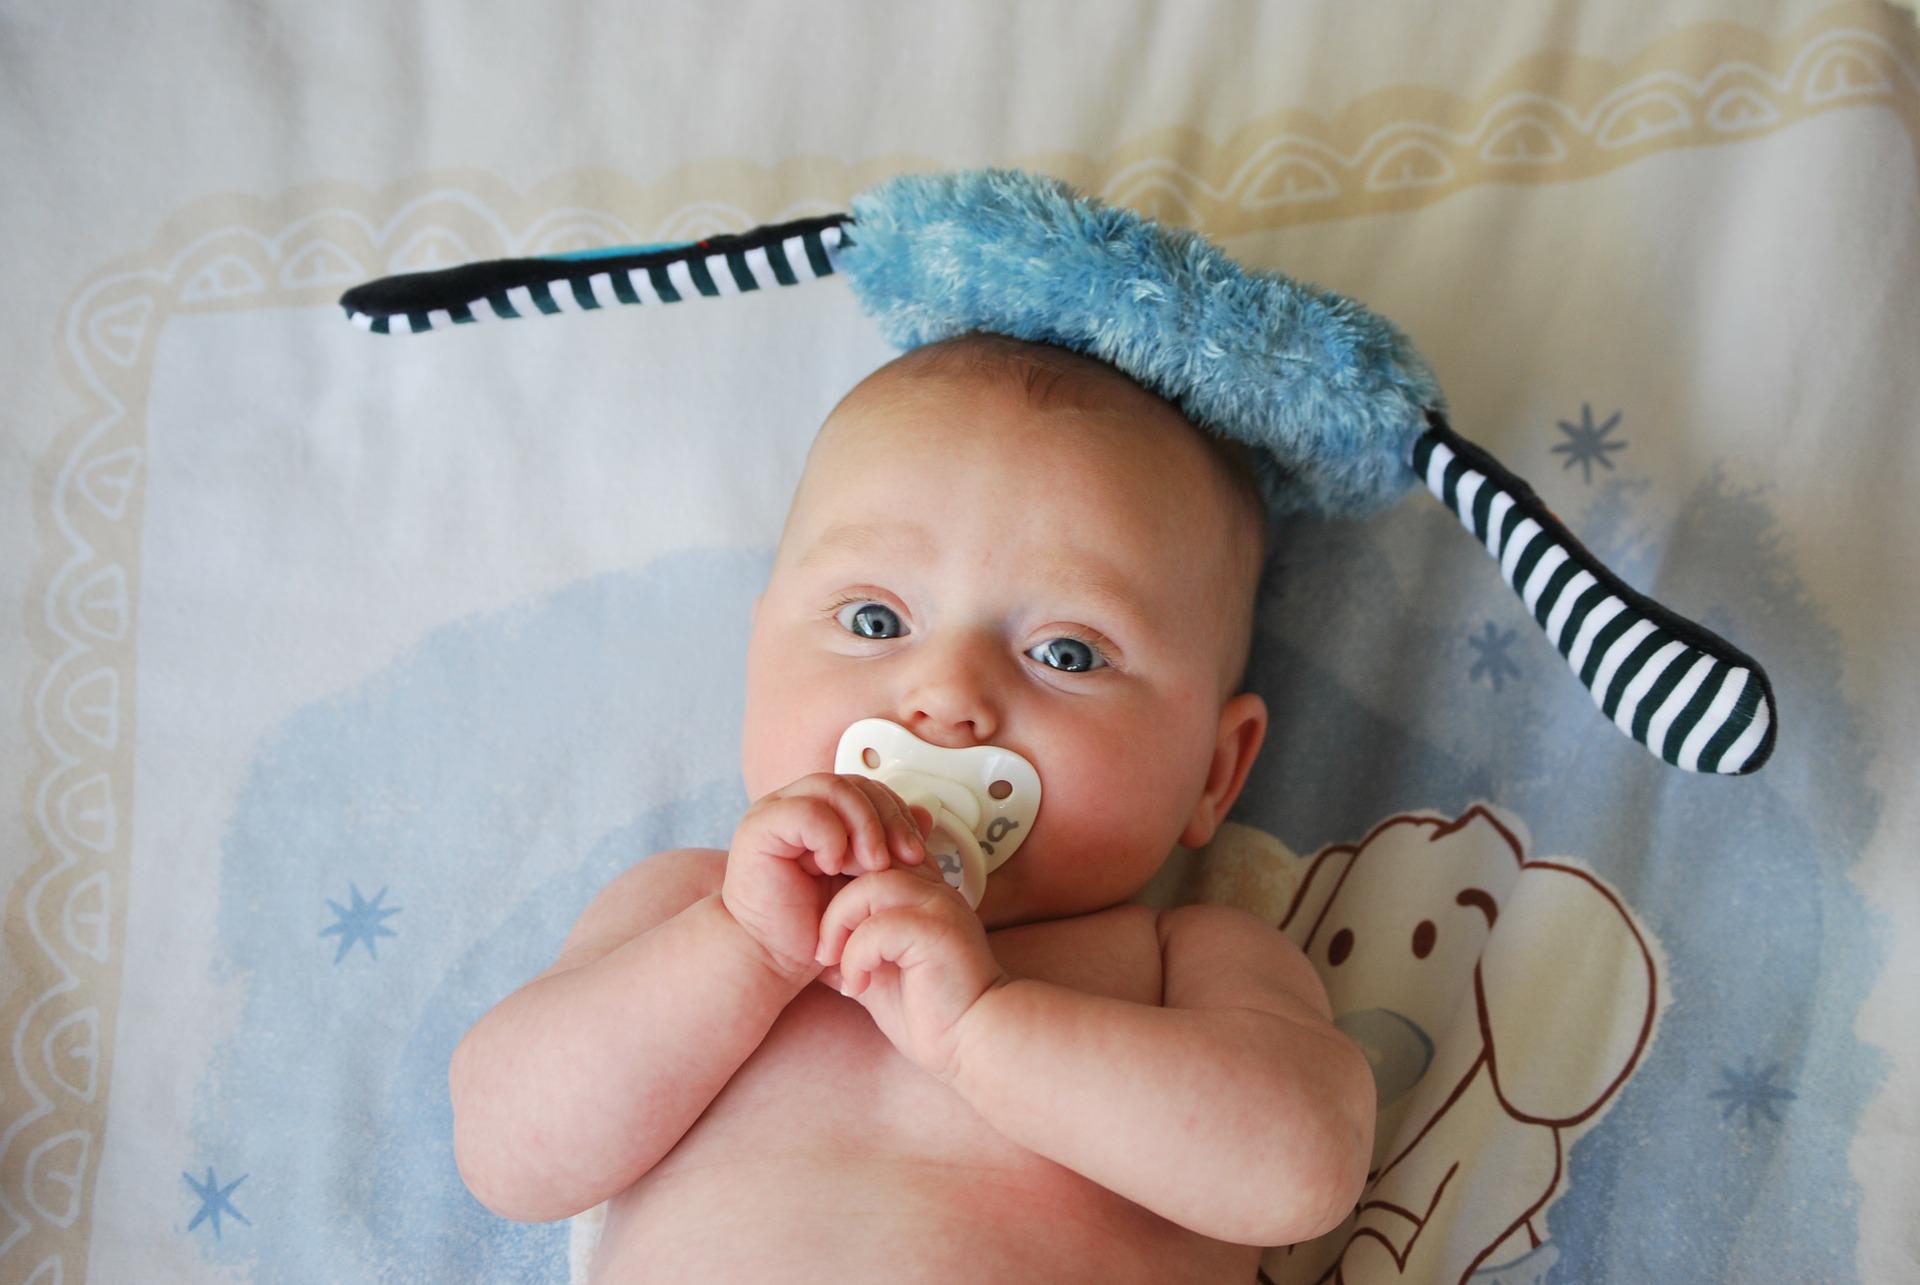 Chupeta inteligente monitora saúde dos bebês